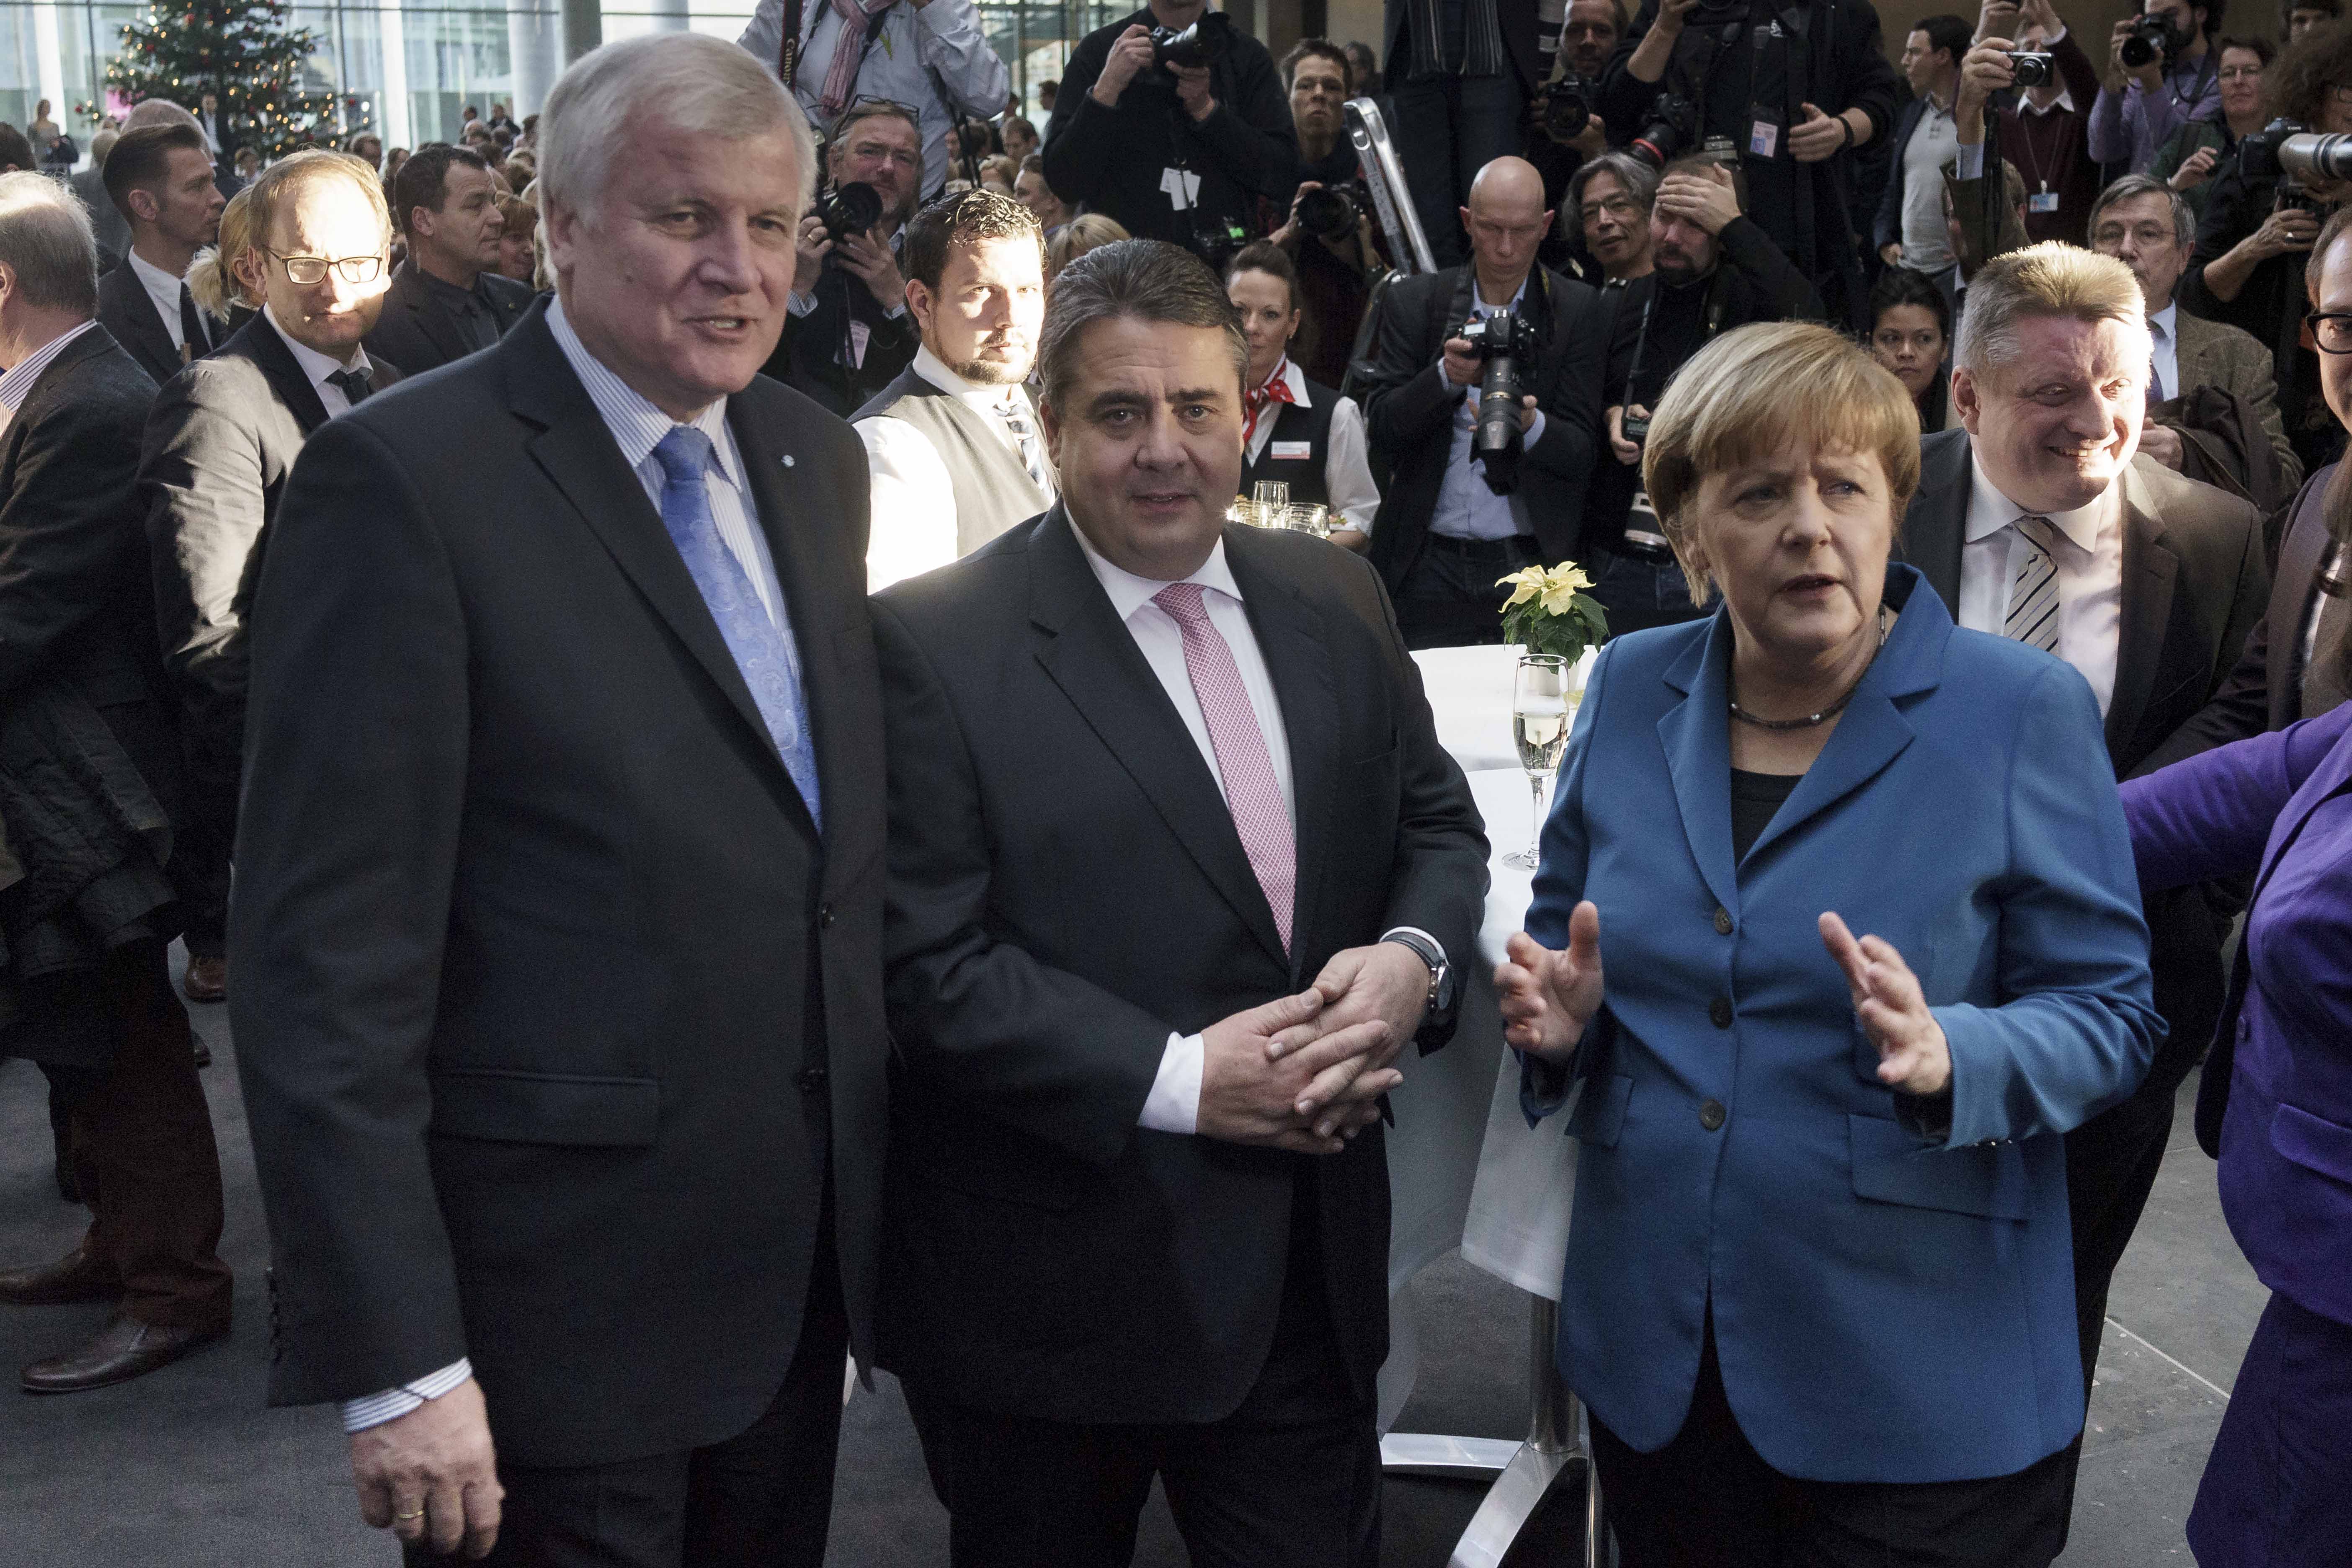 Spekulationen um Kanzlerkandidaten: Bei direkter Wahl bekäme Merkel 25 Prozent der Stimmen